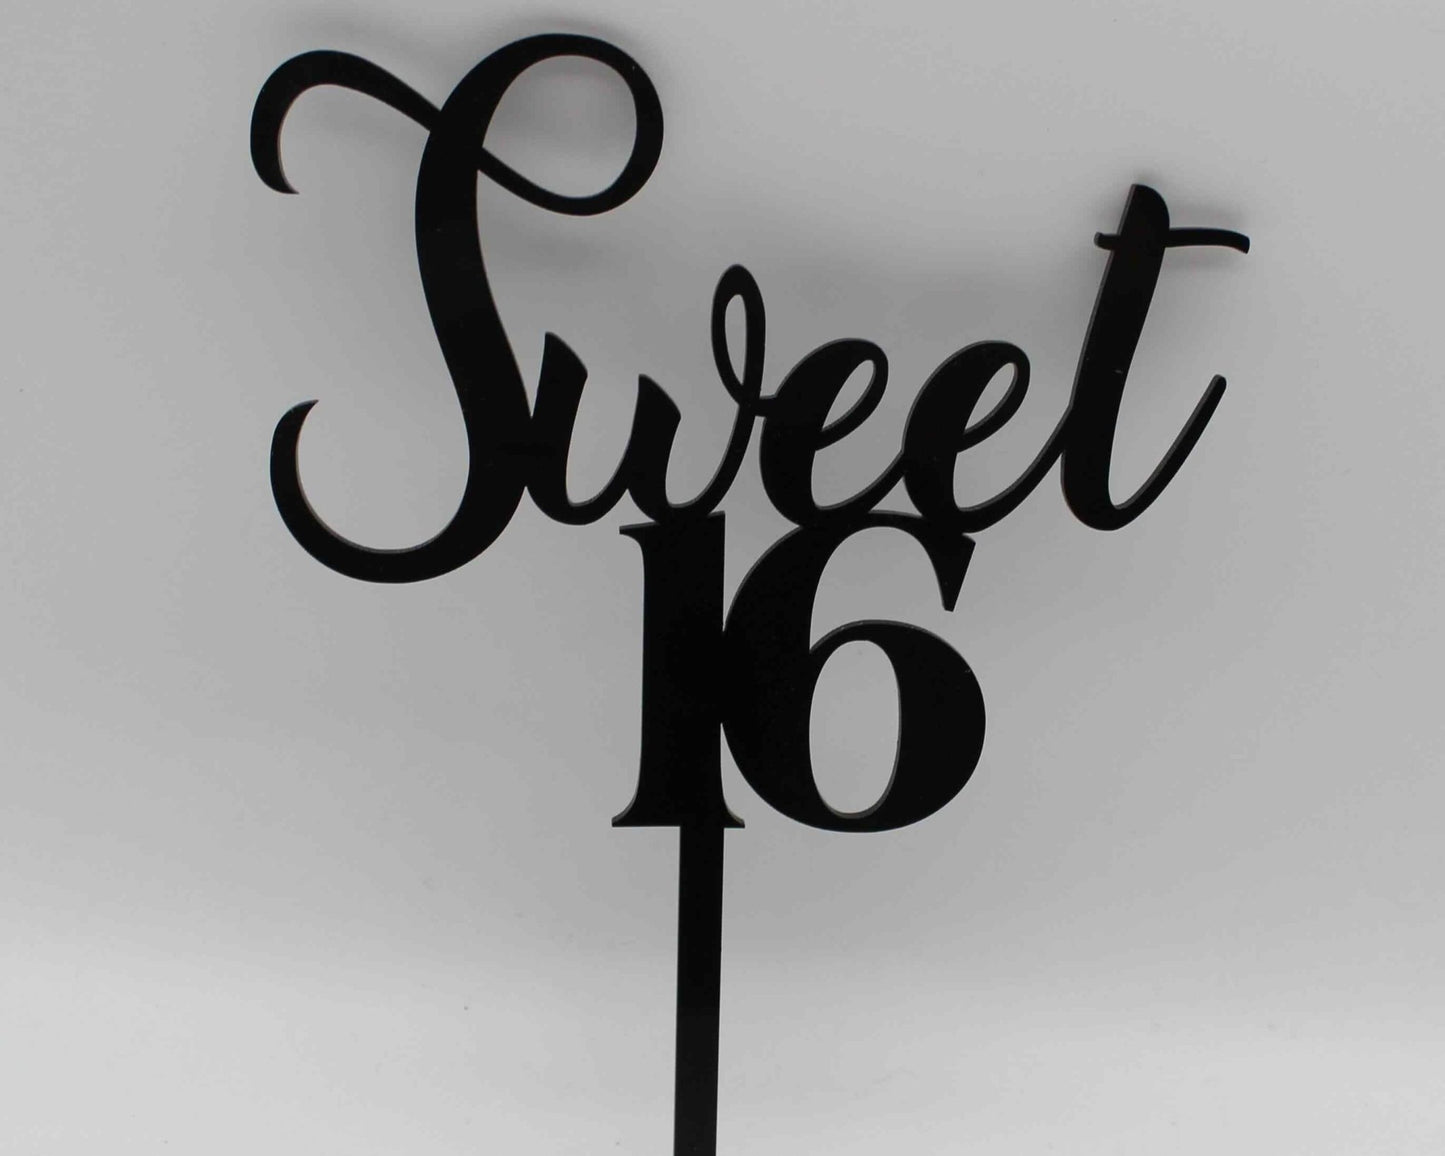 Sweet 16 Cake Topper - Haisley Design